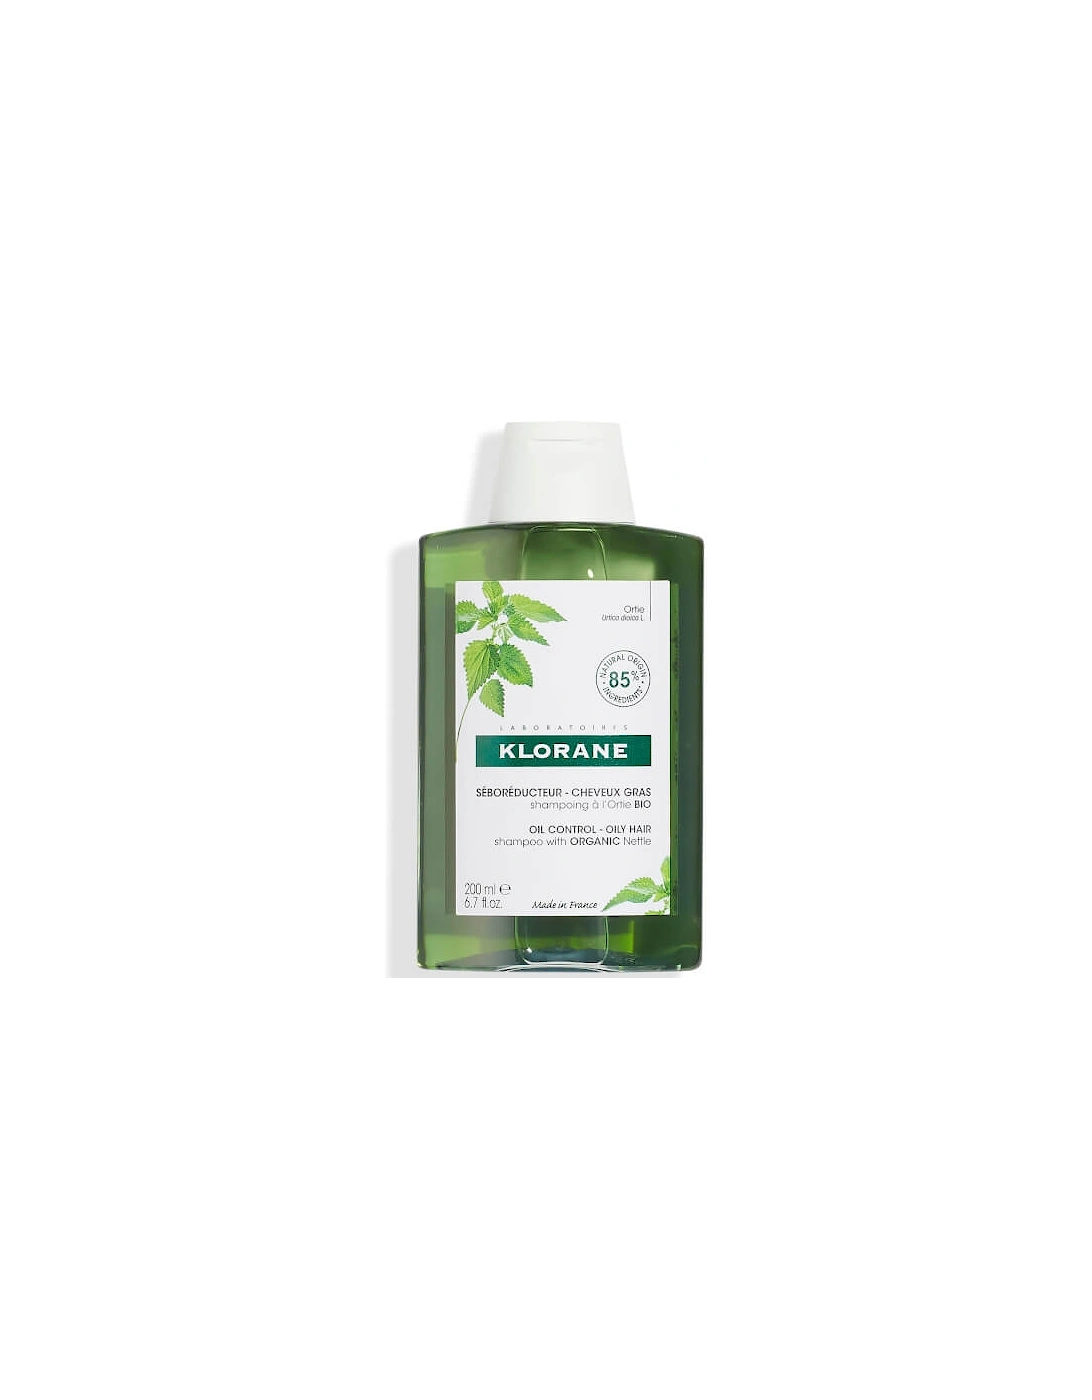 Nettle Shampoo 200ml - KLORANE, 2 of 1